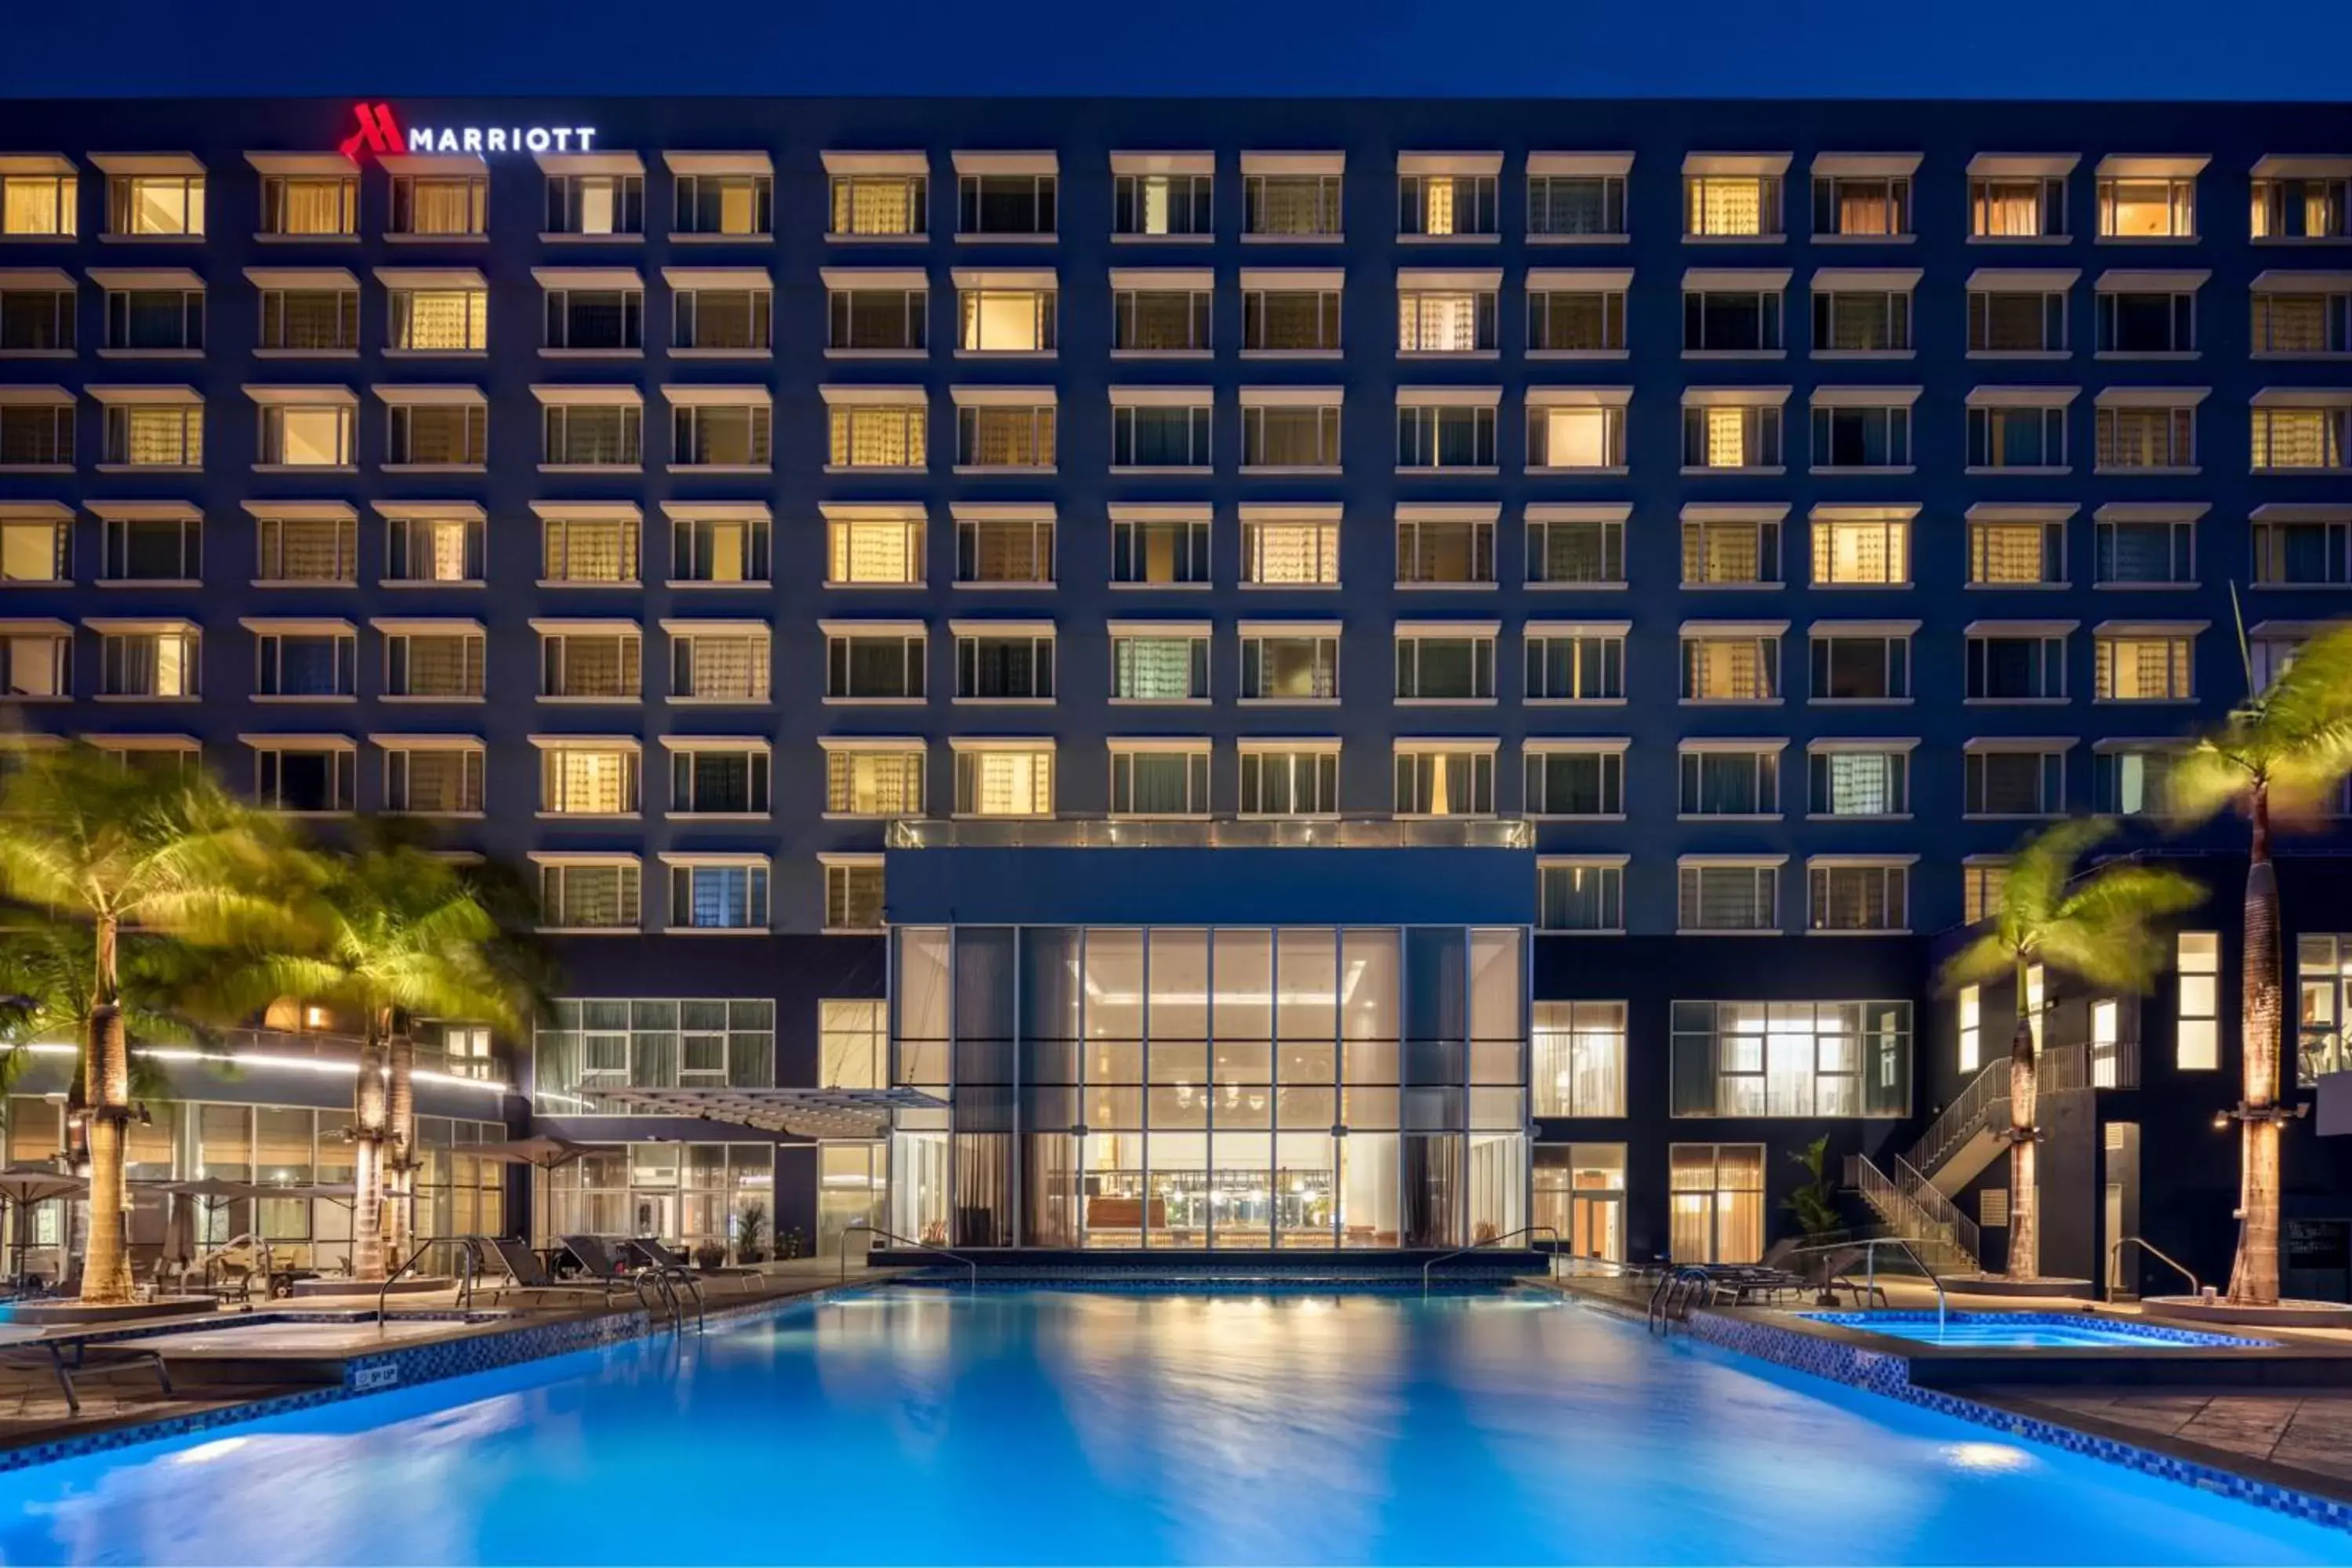 Property building, Swimming Pool in Guyana Marriott Hotel Georgetown